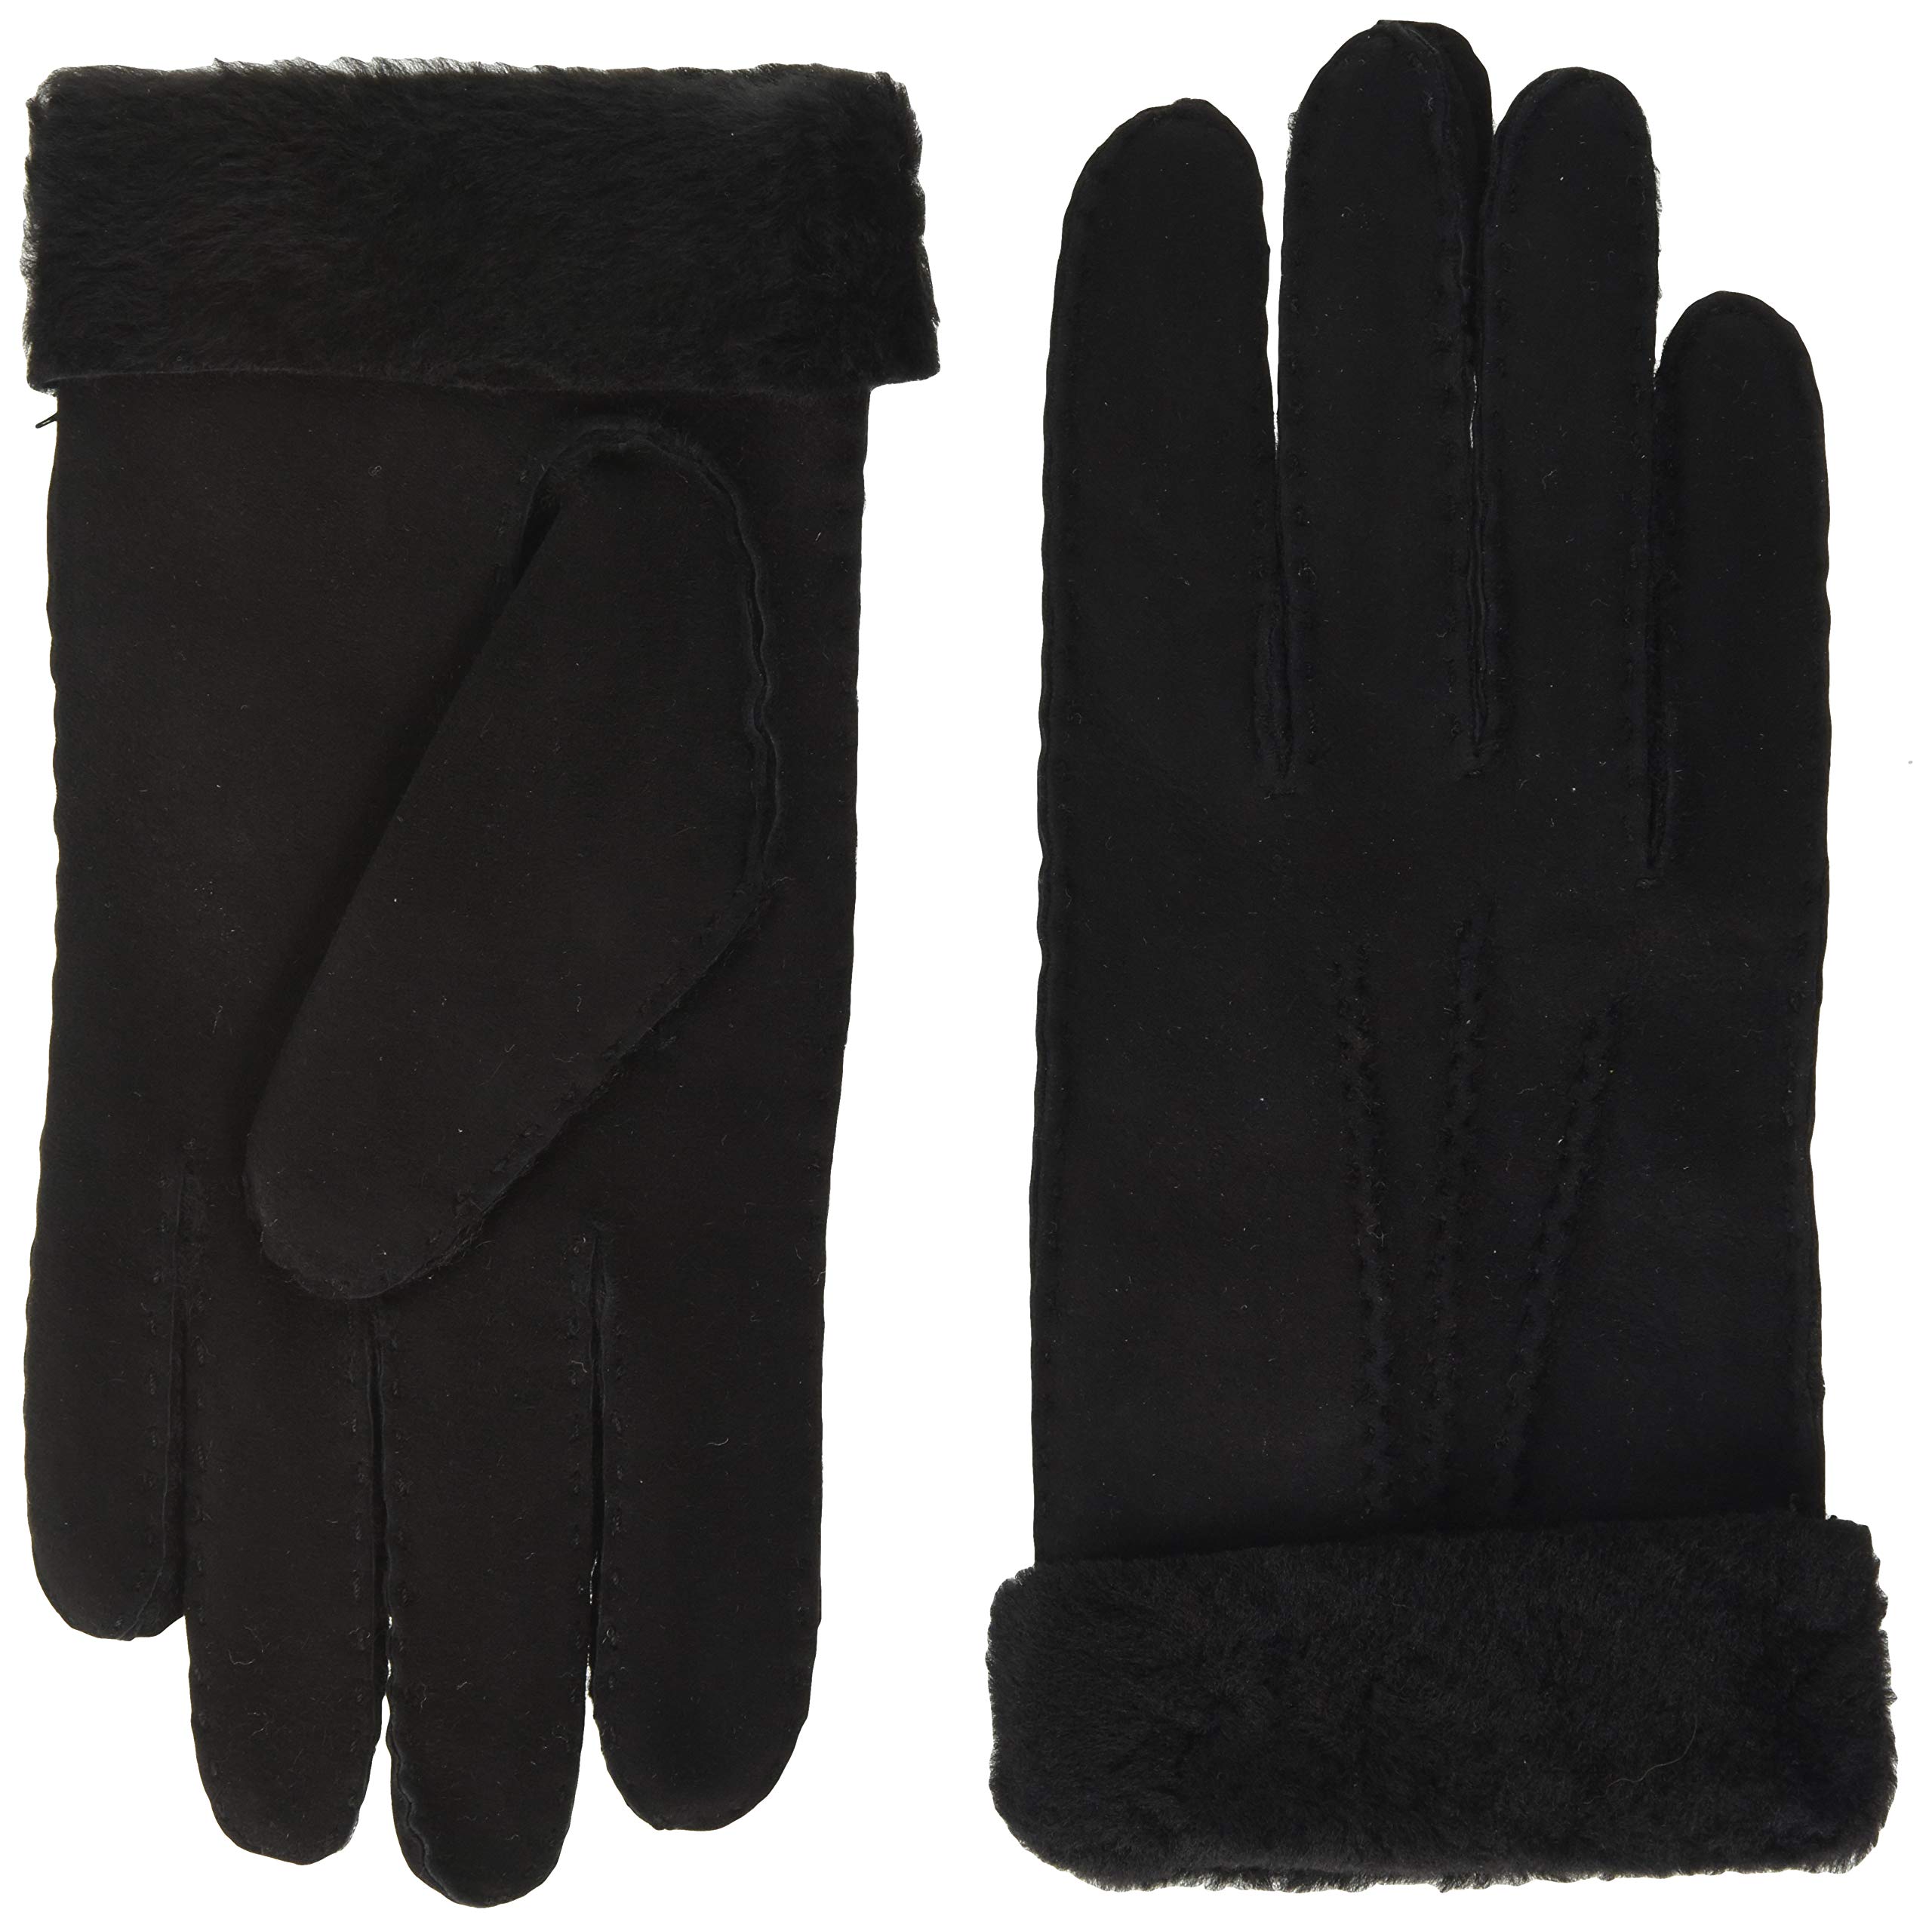 KESSLER Damen Ilvy Winter-Handschuhe, 001 Black, 7